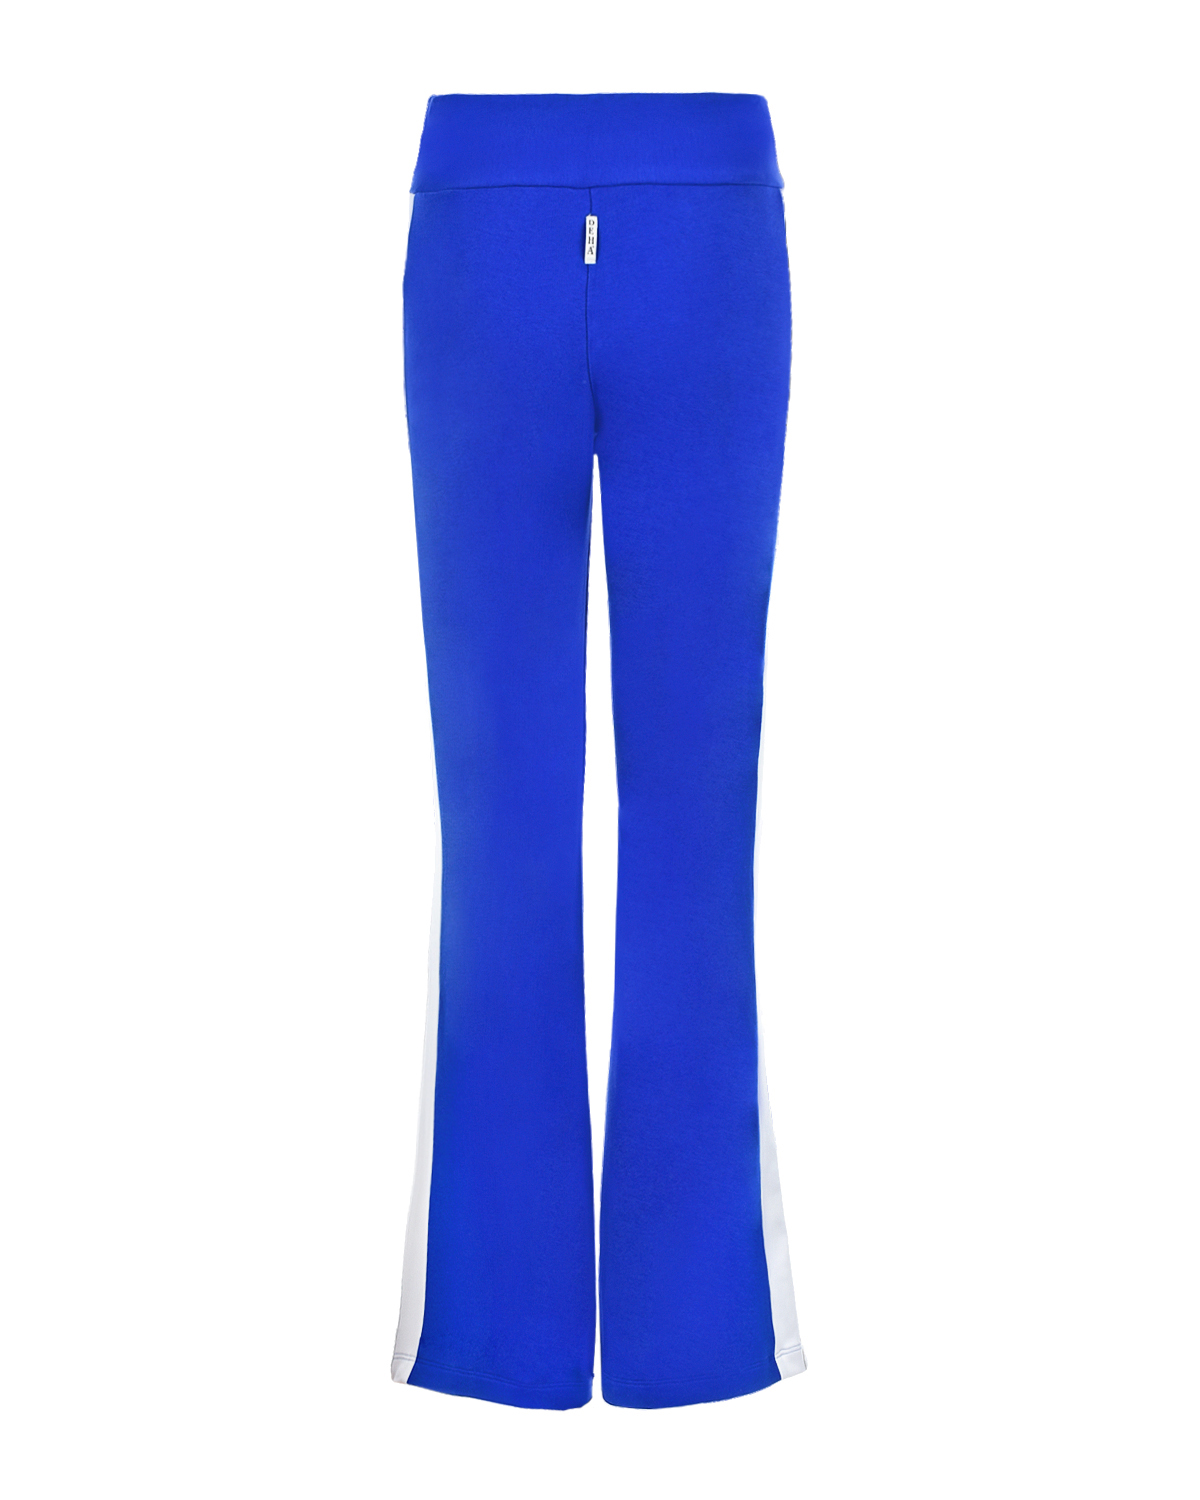 Спортивные брюки синего цвета Deha, размер 40 - фото 2